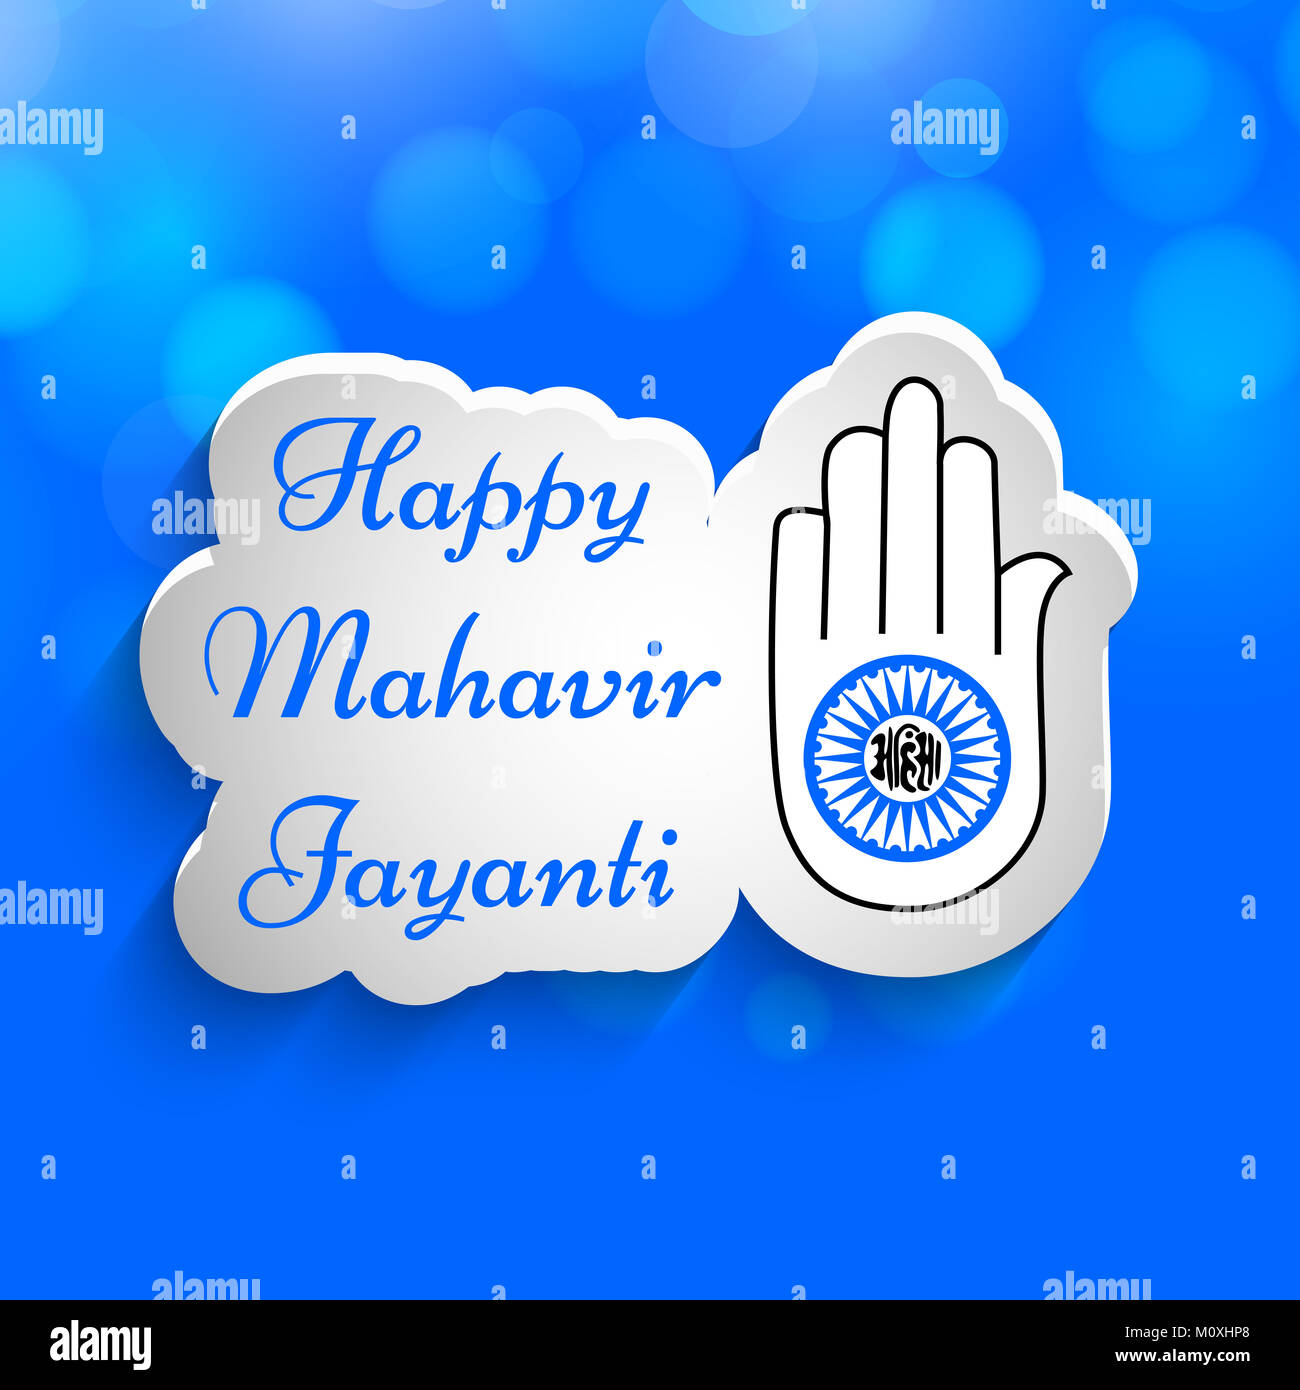 illustration of jain festival Mahavir Jayanti background Stock Photo